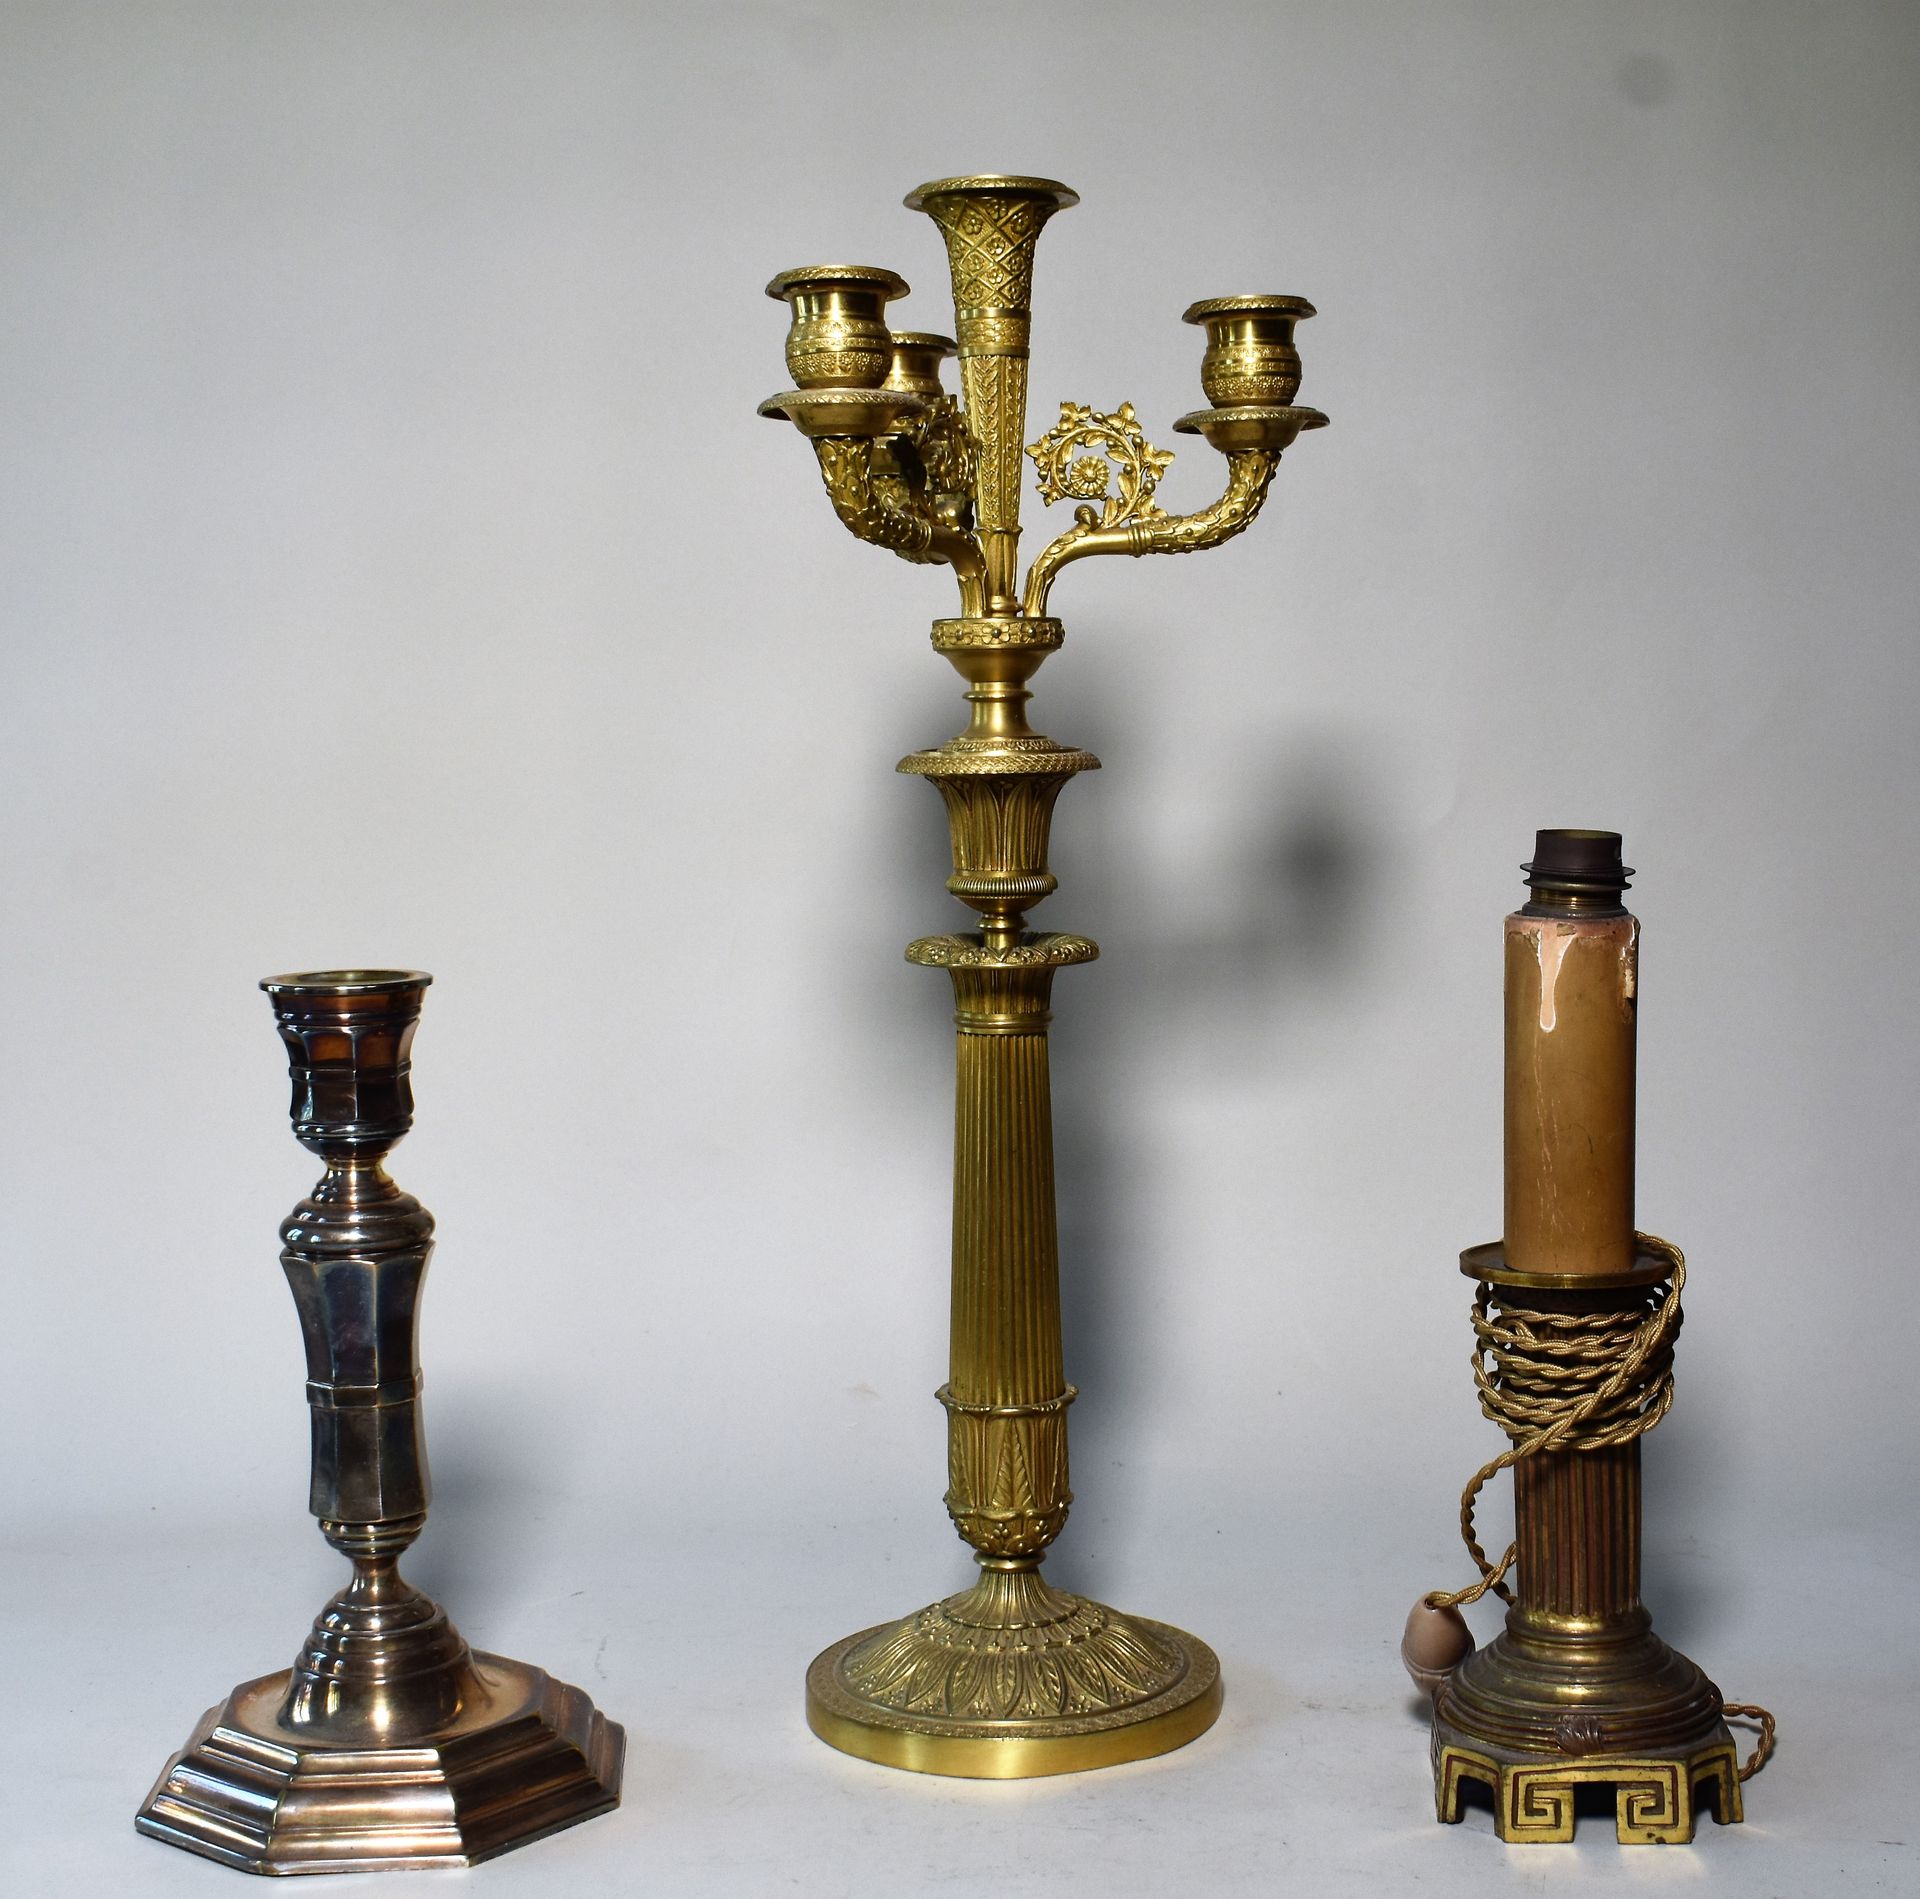 Null CANDELABRE a quattro luci in bronzo dorato, XIX secolo. Altezza 48 cm

CONT&hellip;